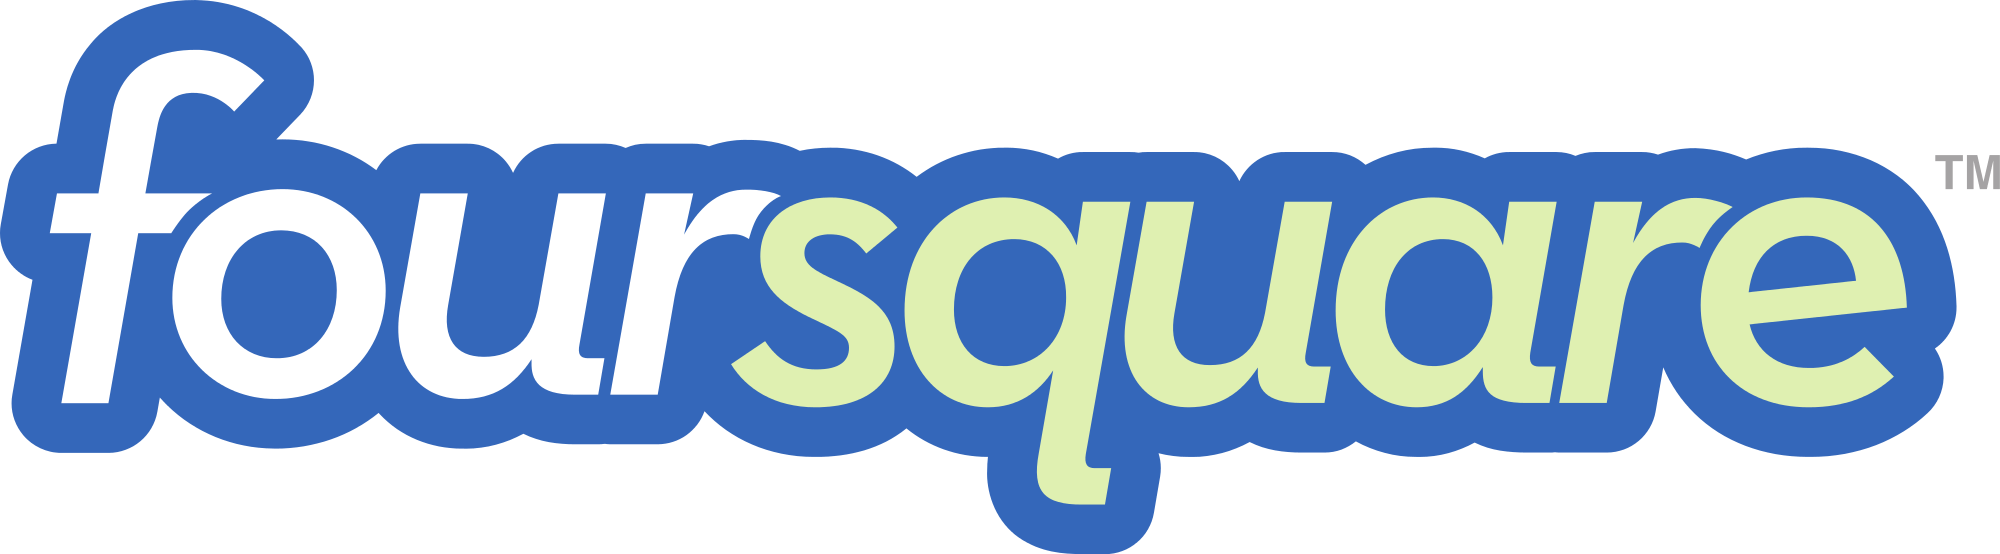 Foursquare Logo - File:Foursquare logo (1).svg - Wikimedia Commons